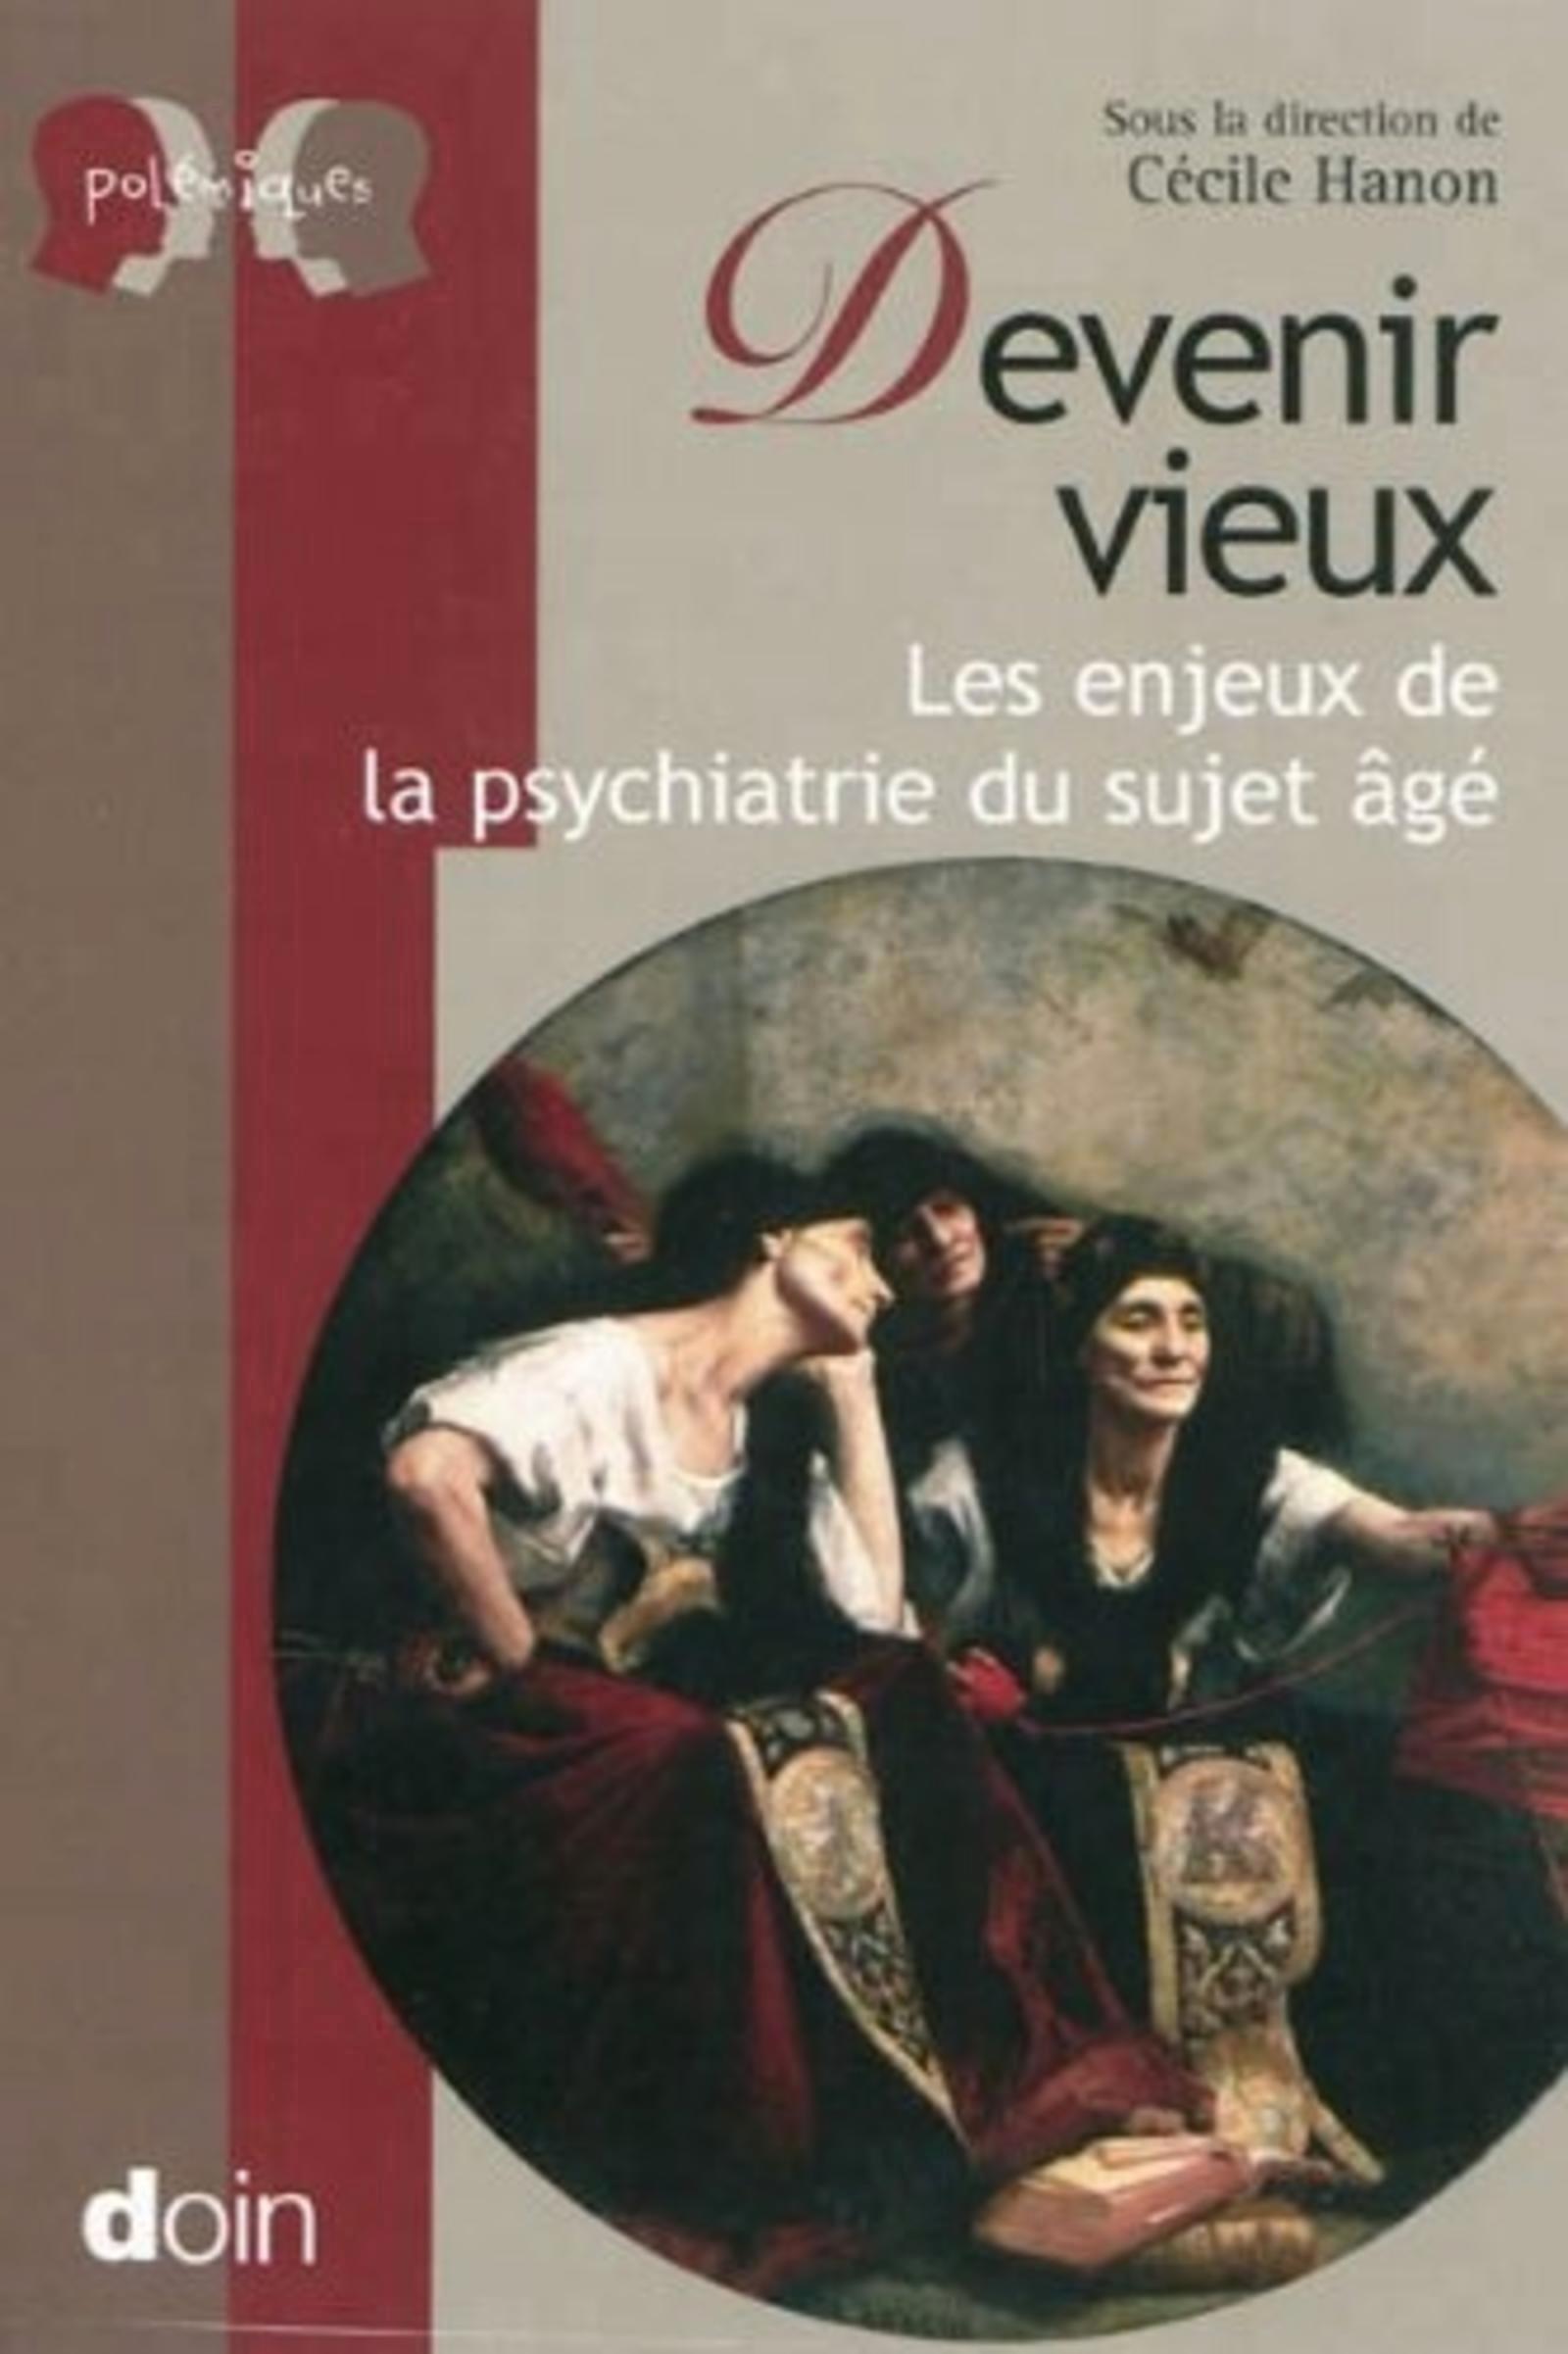 Devenir vieux, Les enjeux de la psychiatrie du sujet âgé (9782704013142-front-cover)